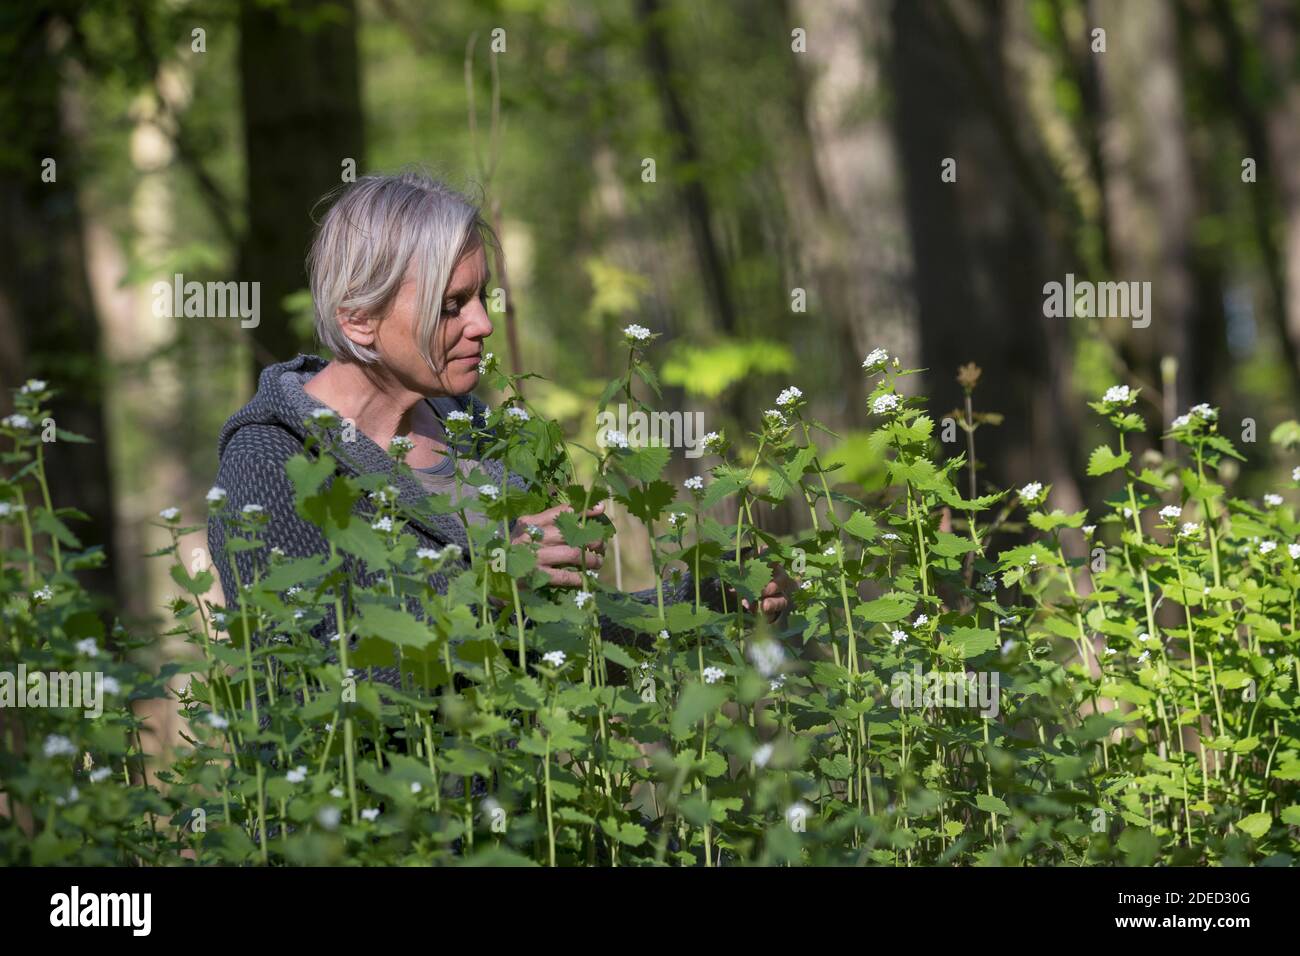 Mostaza de ajo, Ajo de Hedge, Jack-by-the-Hedge (Alliaria petiolata), mujer cosechando mostaza de ajo en un bosque, Alemania Foto de stock